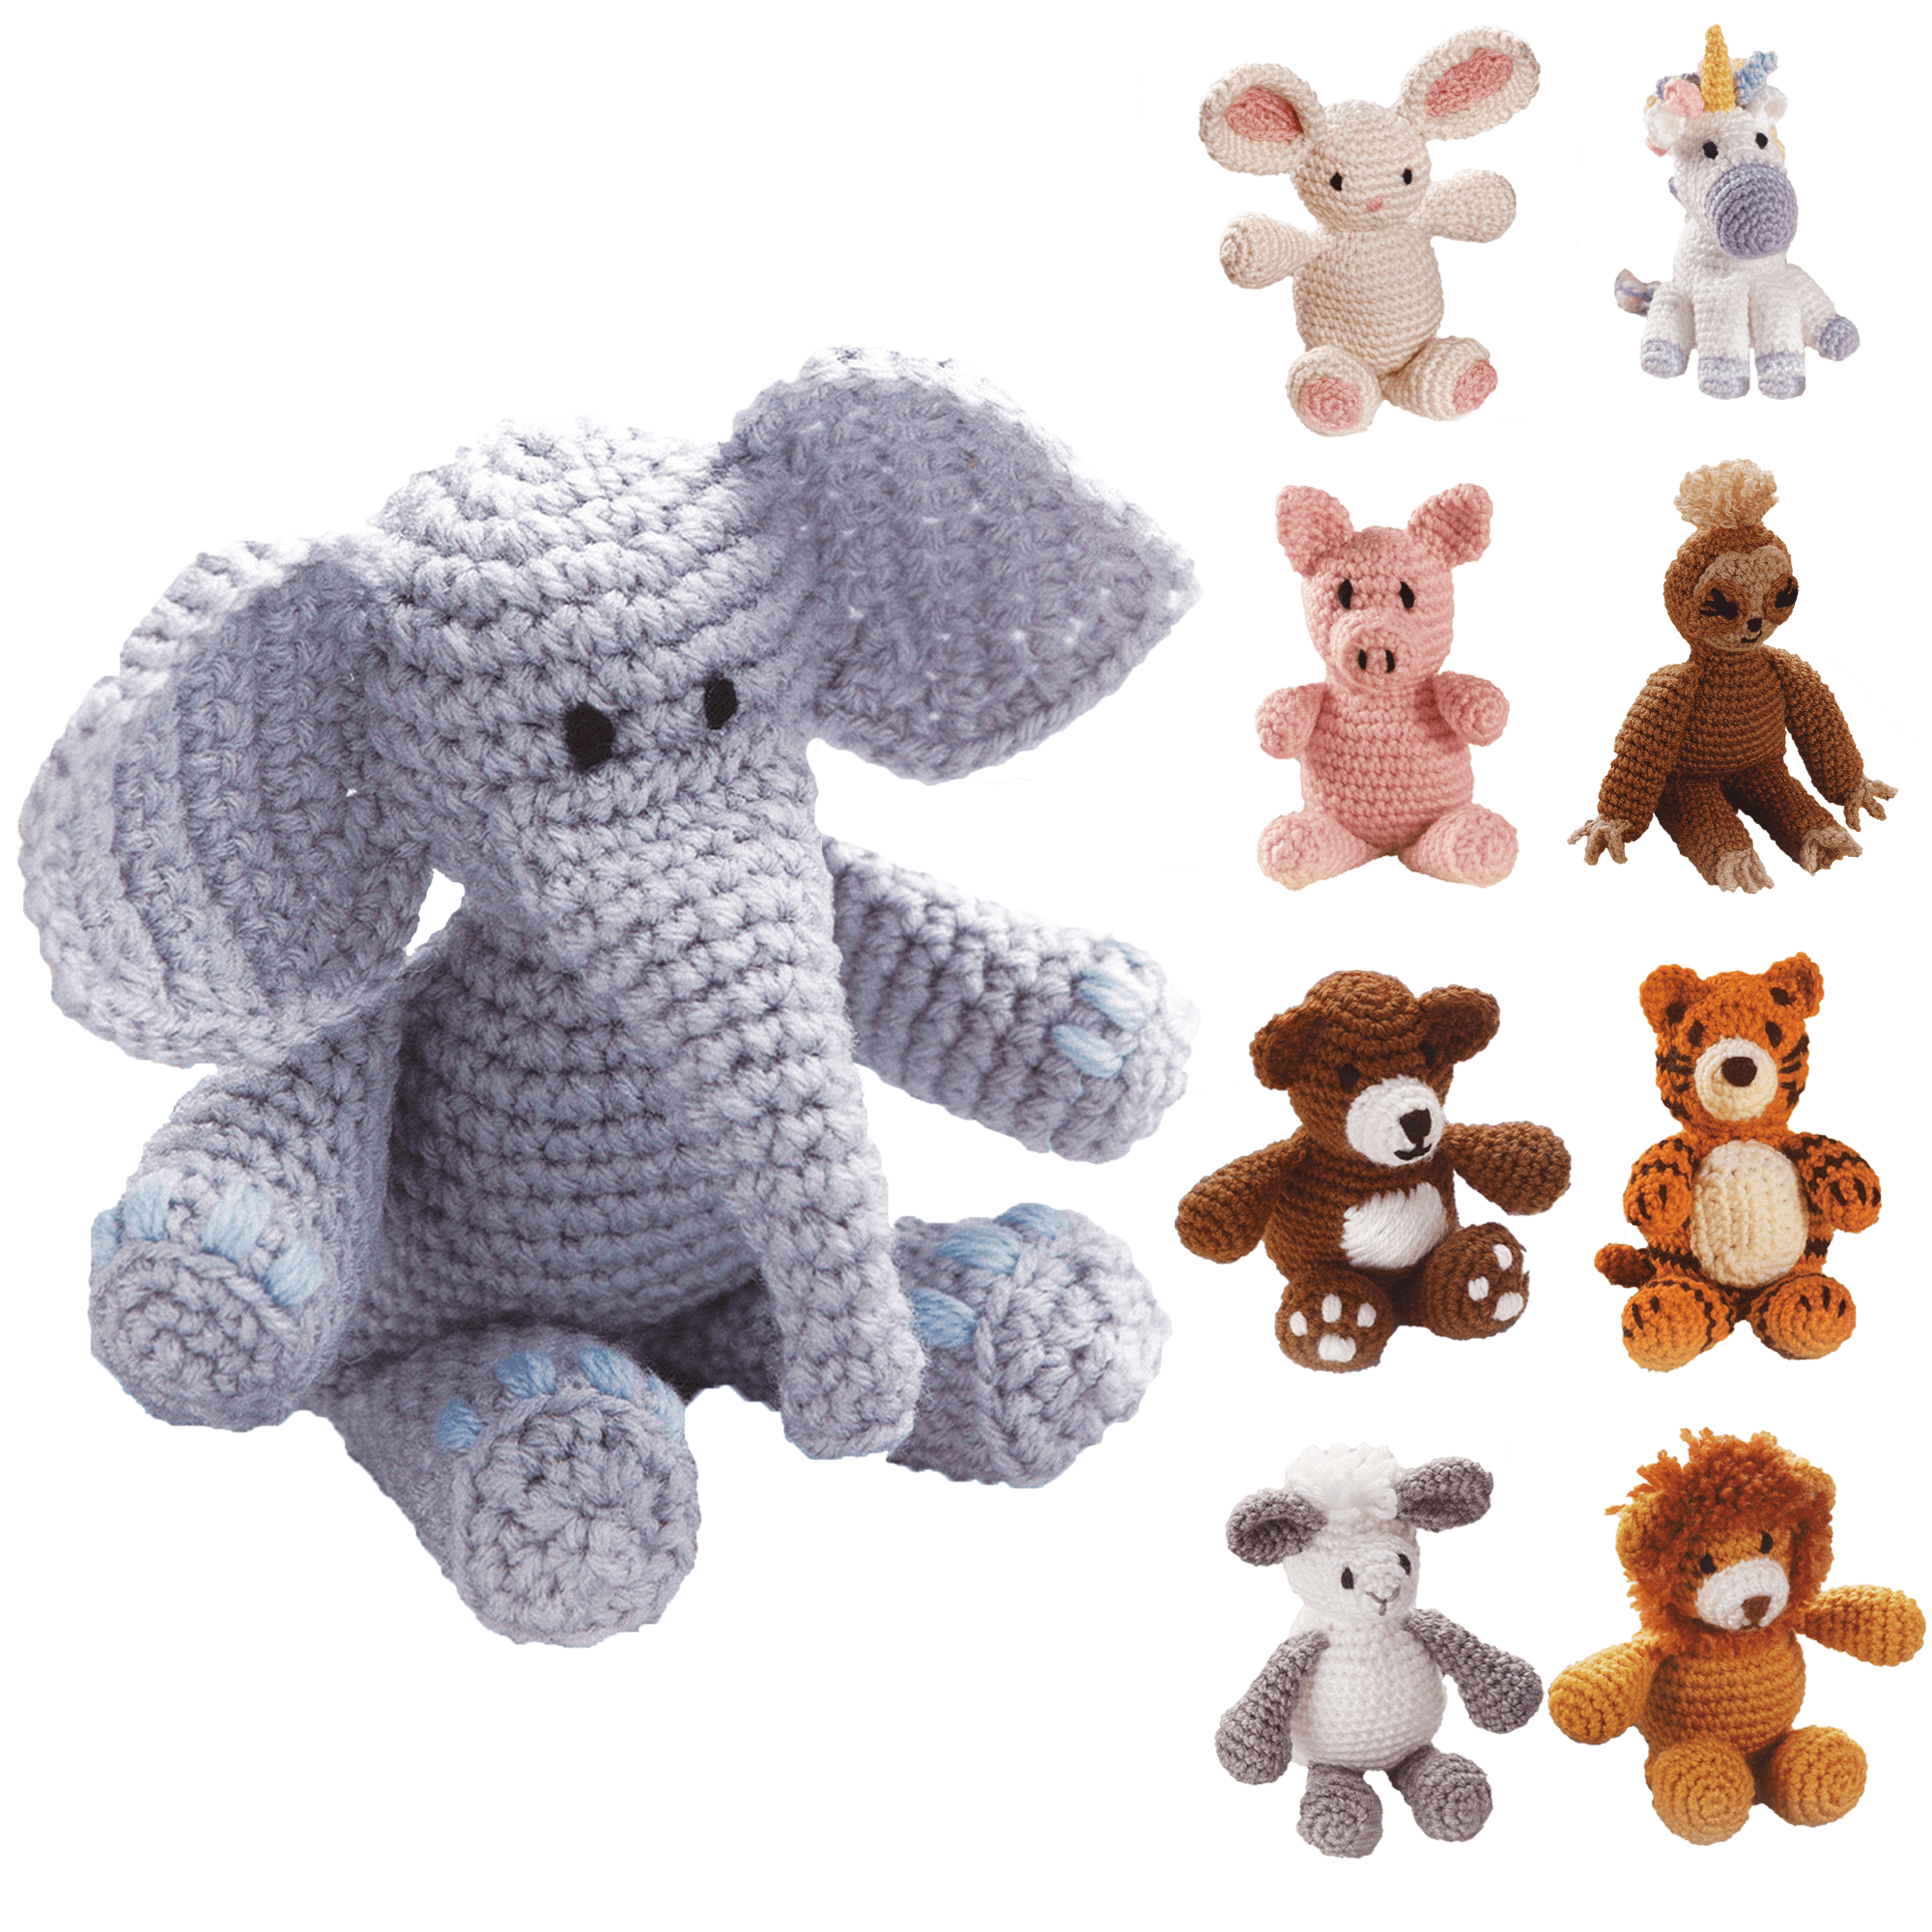 Elephant Intermediate Crochet Kit – Leopold